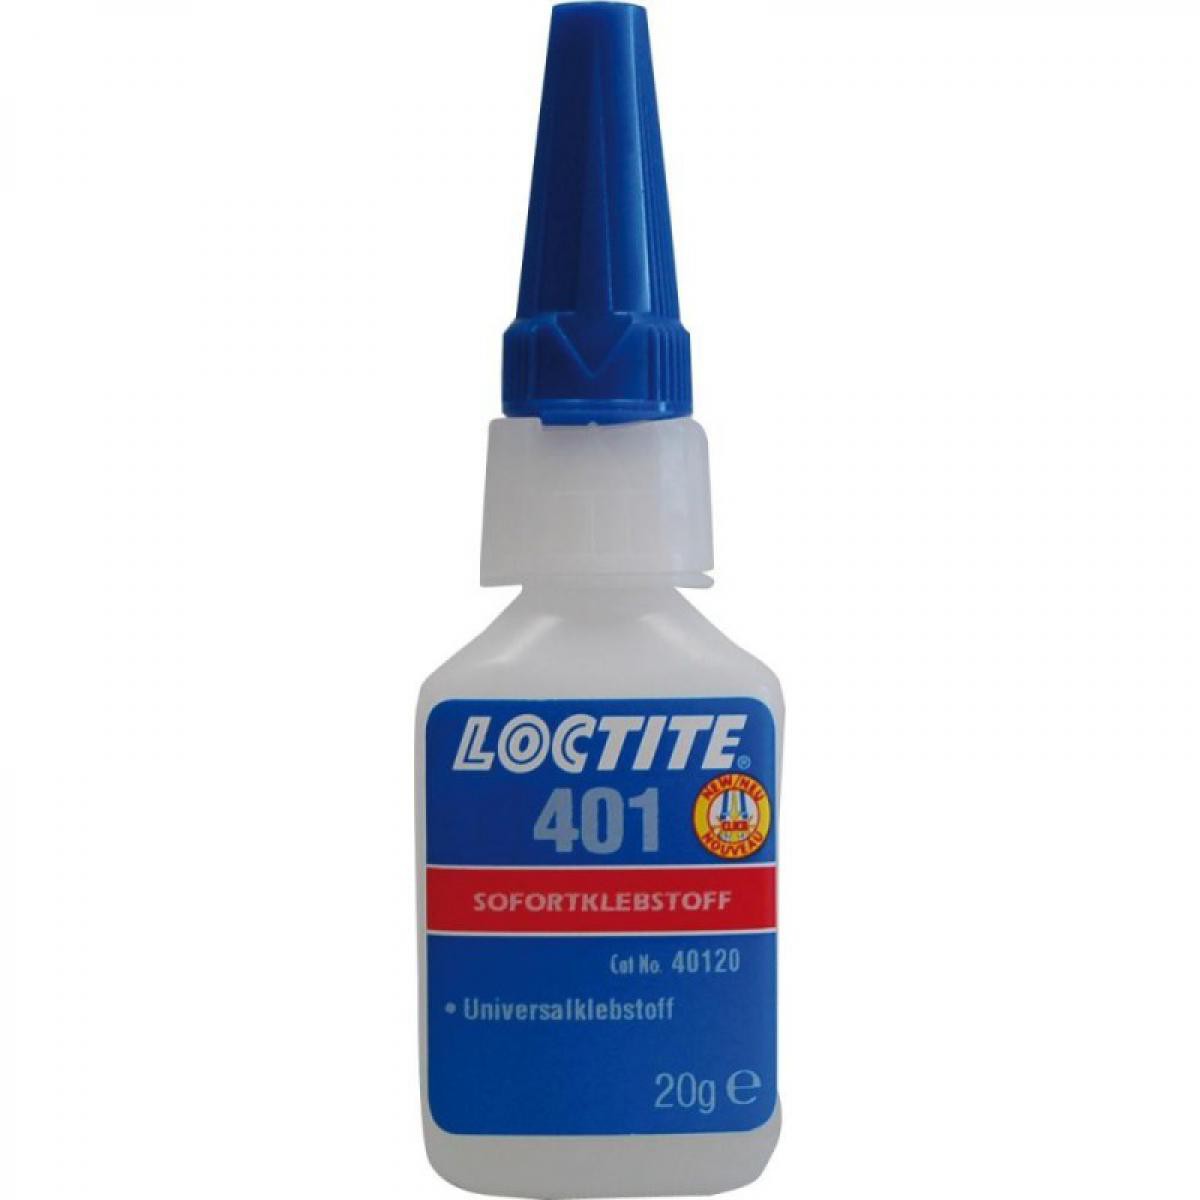 Loctite - LOCTITE 401 20g FL Second adhésif liquide - Mastic, silicone, joint